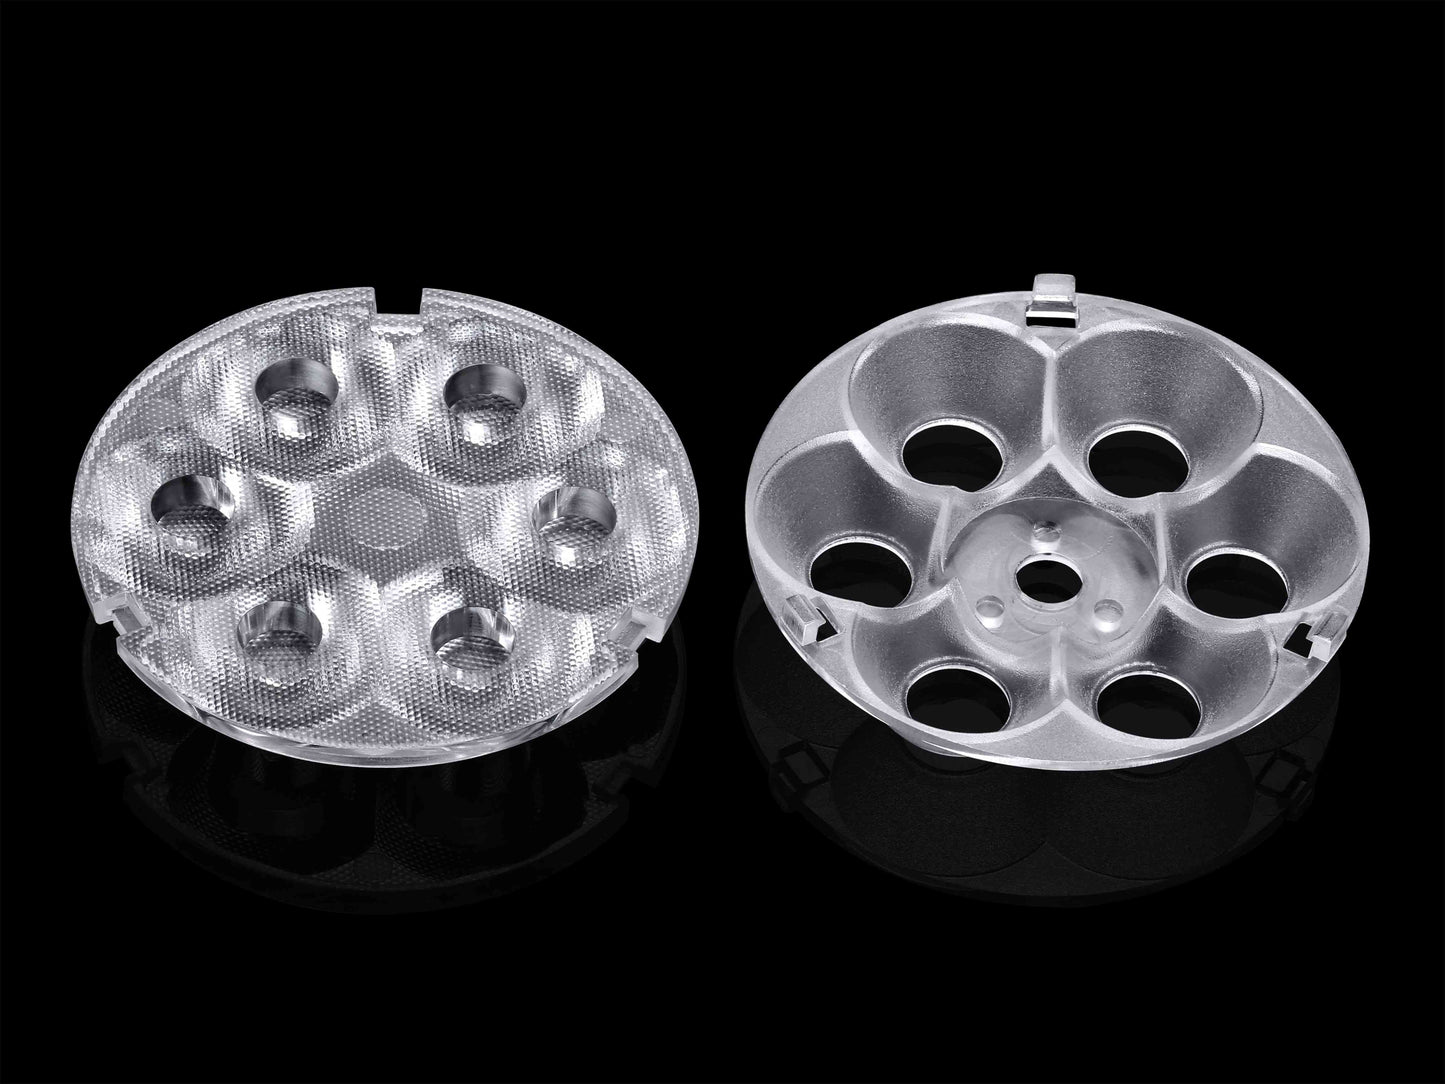 15 24stupňových vícečočkových čoček s kruhovým polem 6 optik v 1 32mm modulu LED čočky